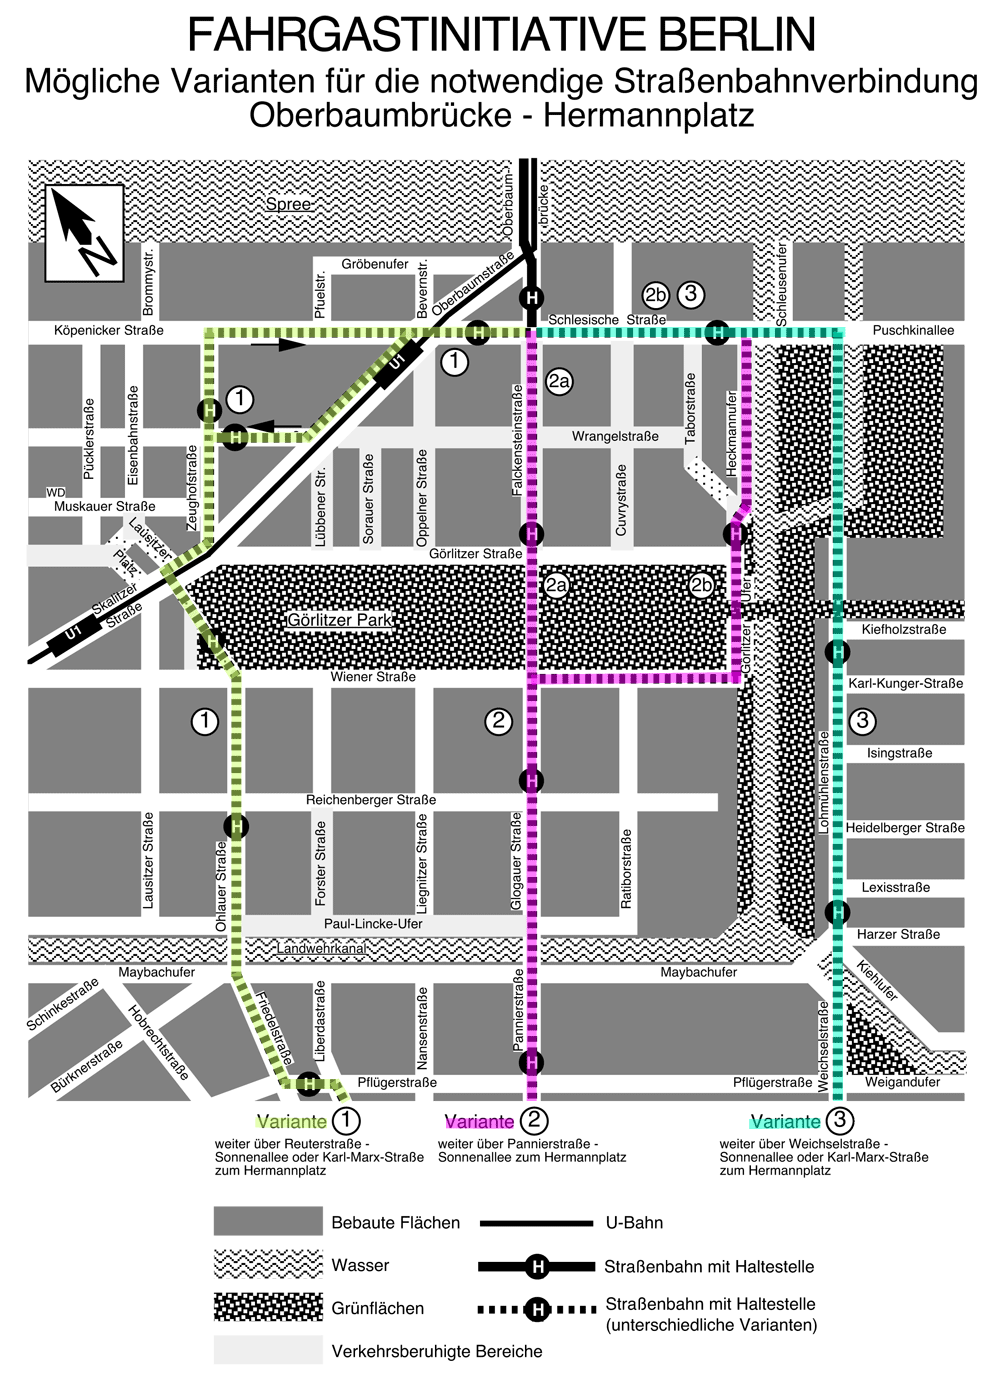 Grafik: Karte von Kreuzberg 36 mit eingezeichneten Linienvarianten.